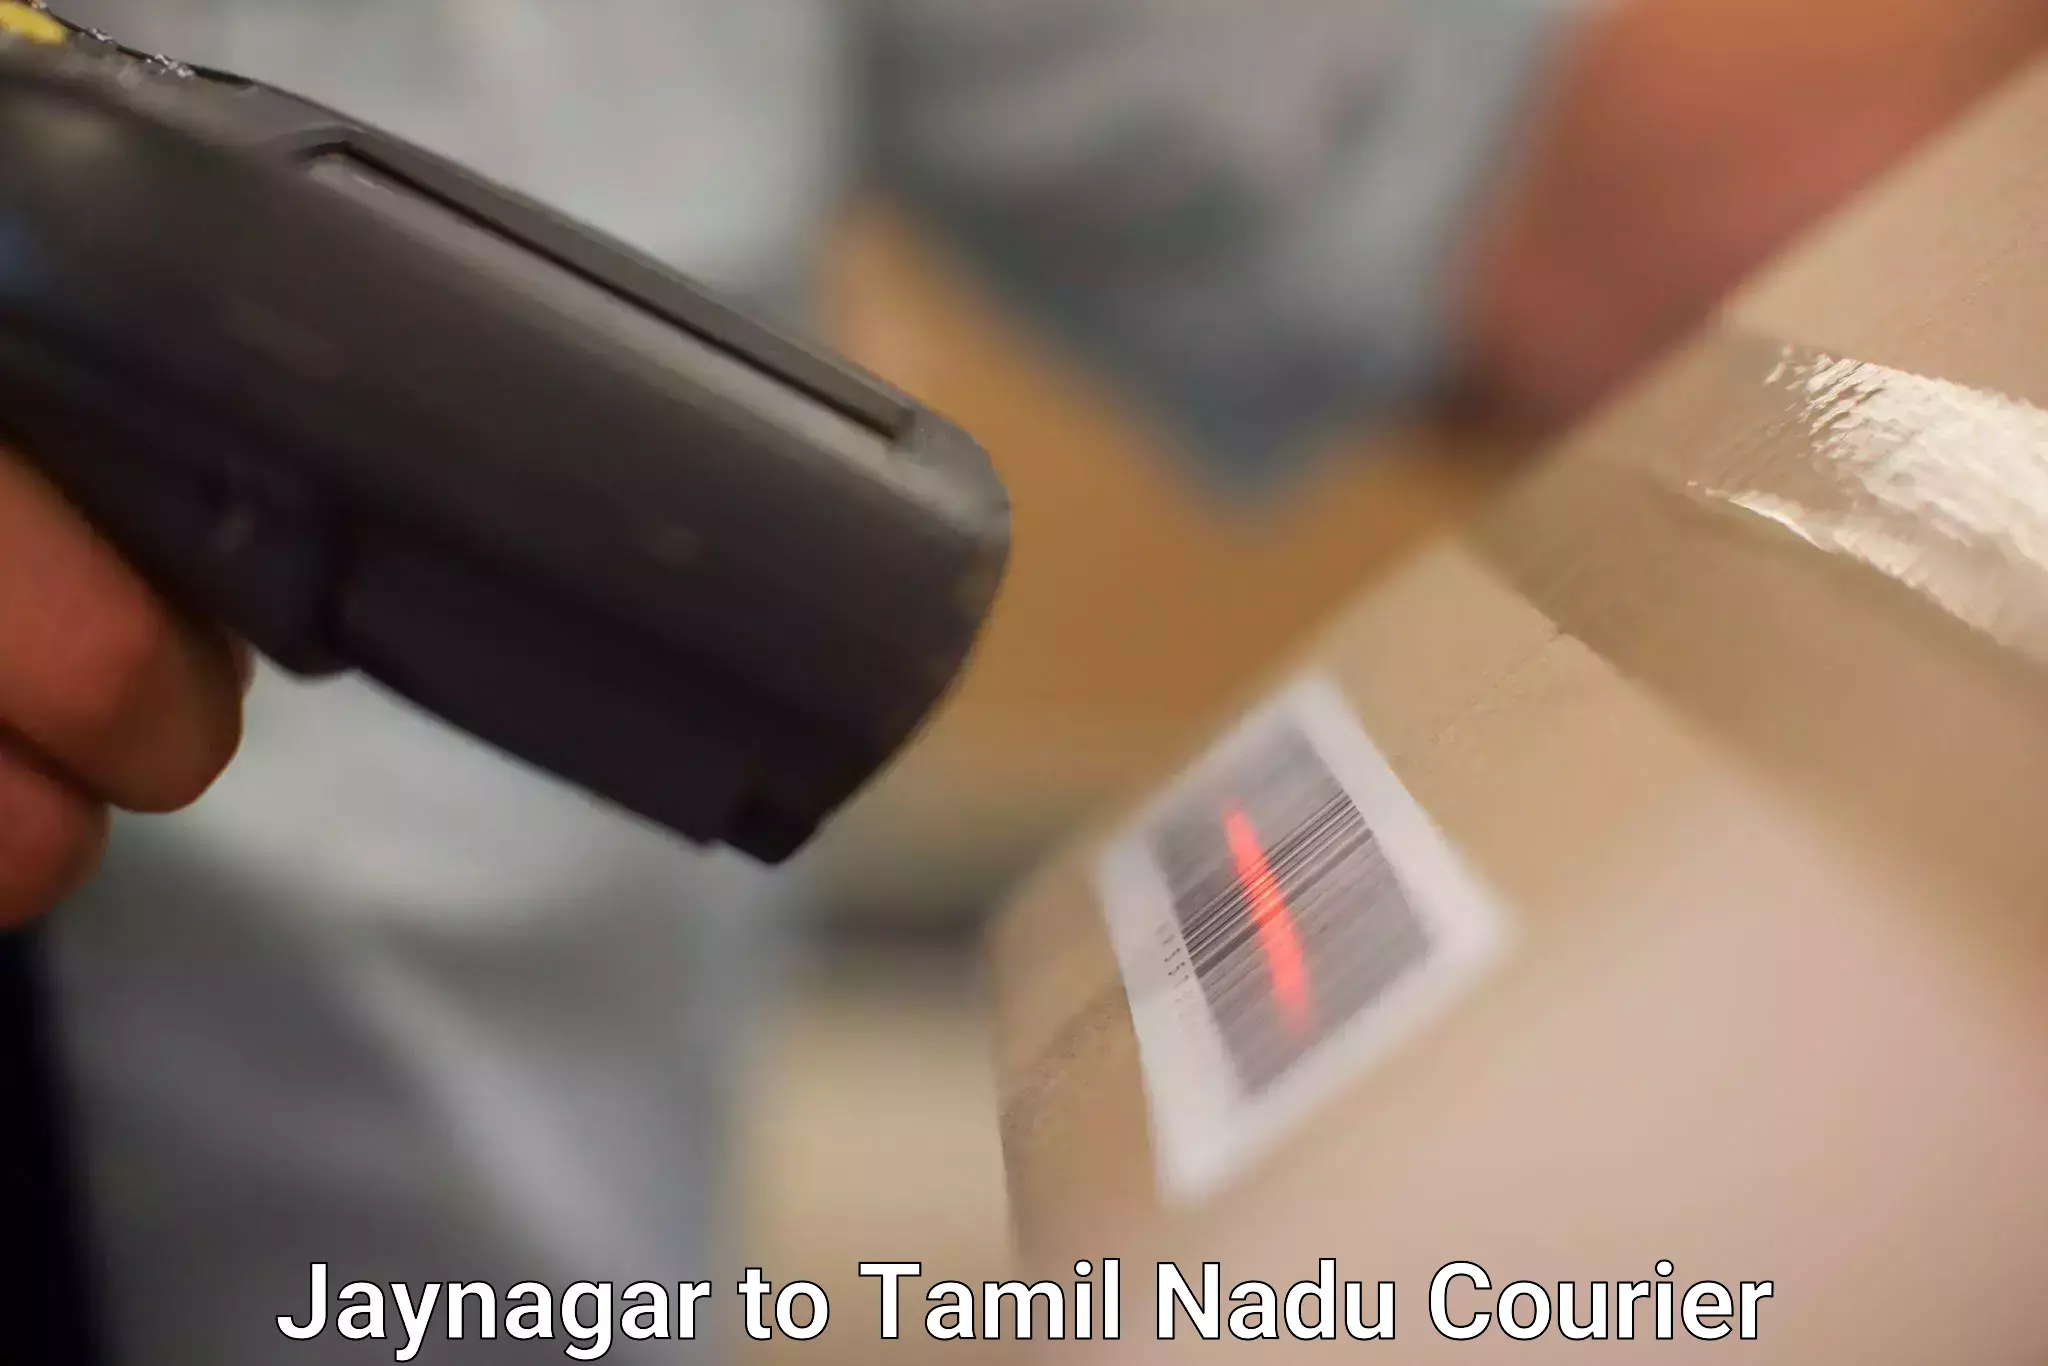 Fast delivery service Jaynagar to Melakaveri